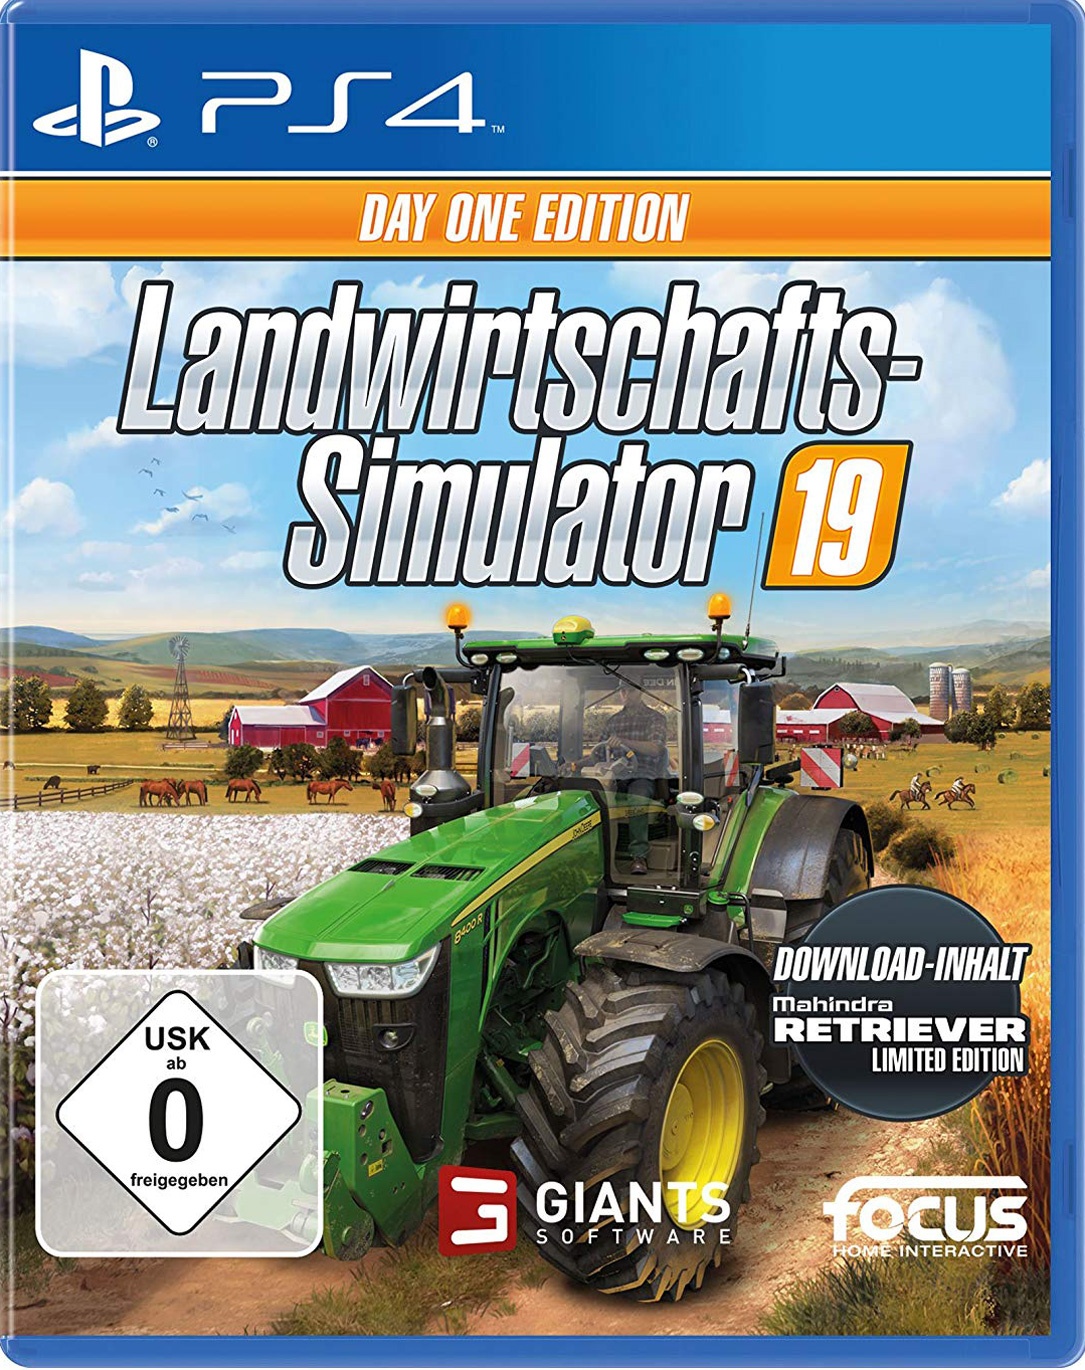 Landwirtschafts-Simulator 22: Das steckt in der Collector's Edition 